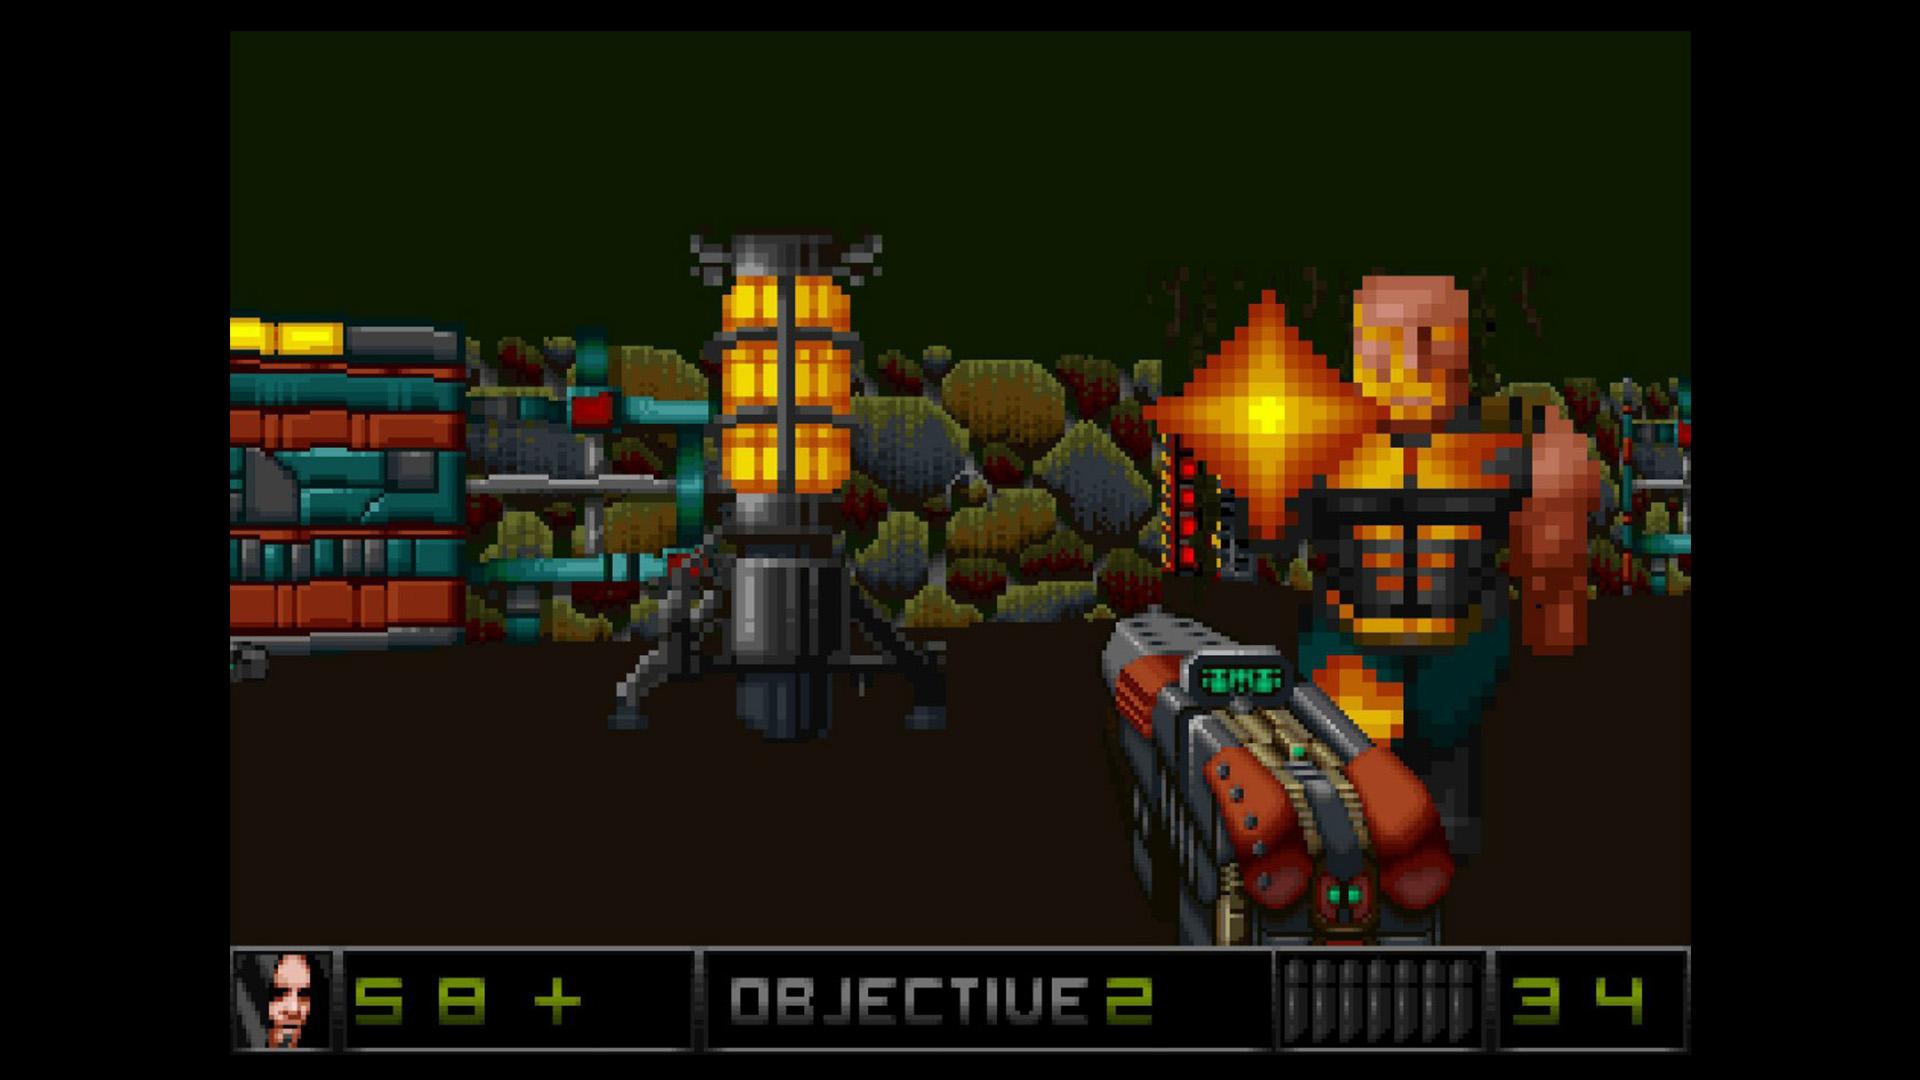 Screenshot №1 from game Merger 3D